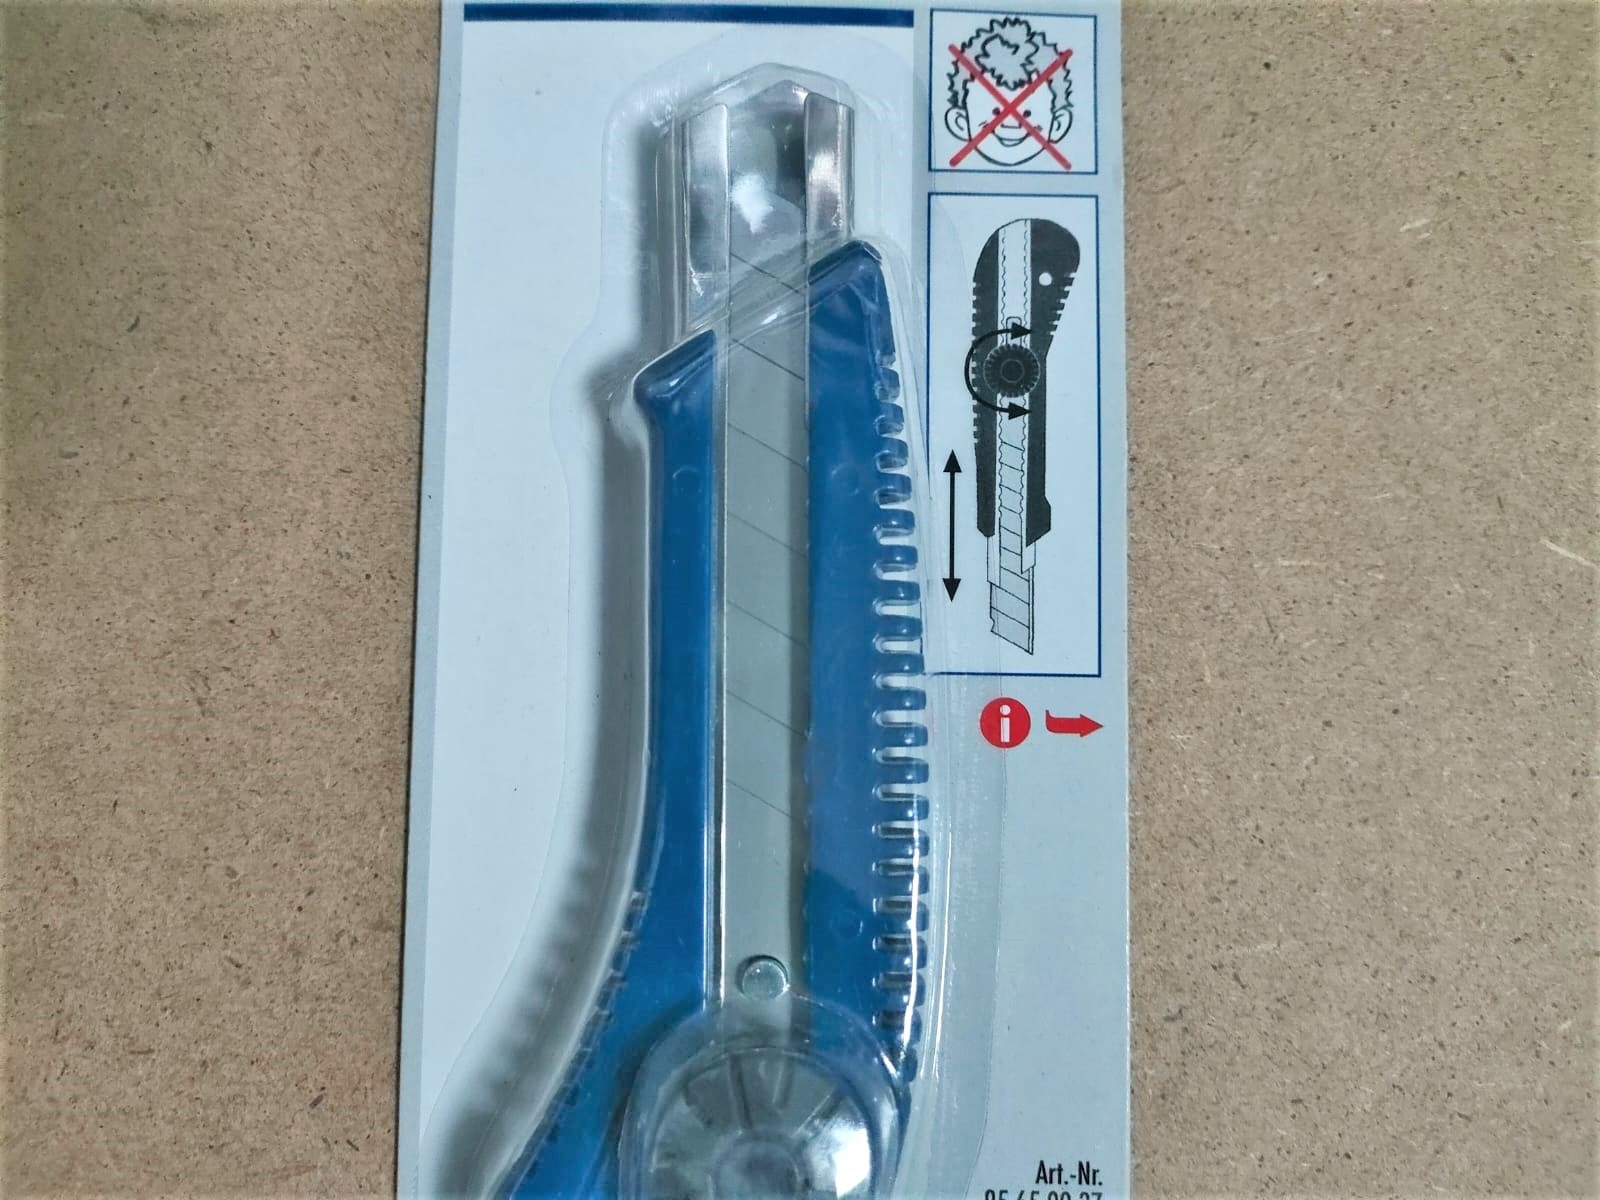 Малярный нож Color Expert со сменными отламывающимся лезвиями шириной 18 мм (95650037)